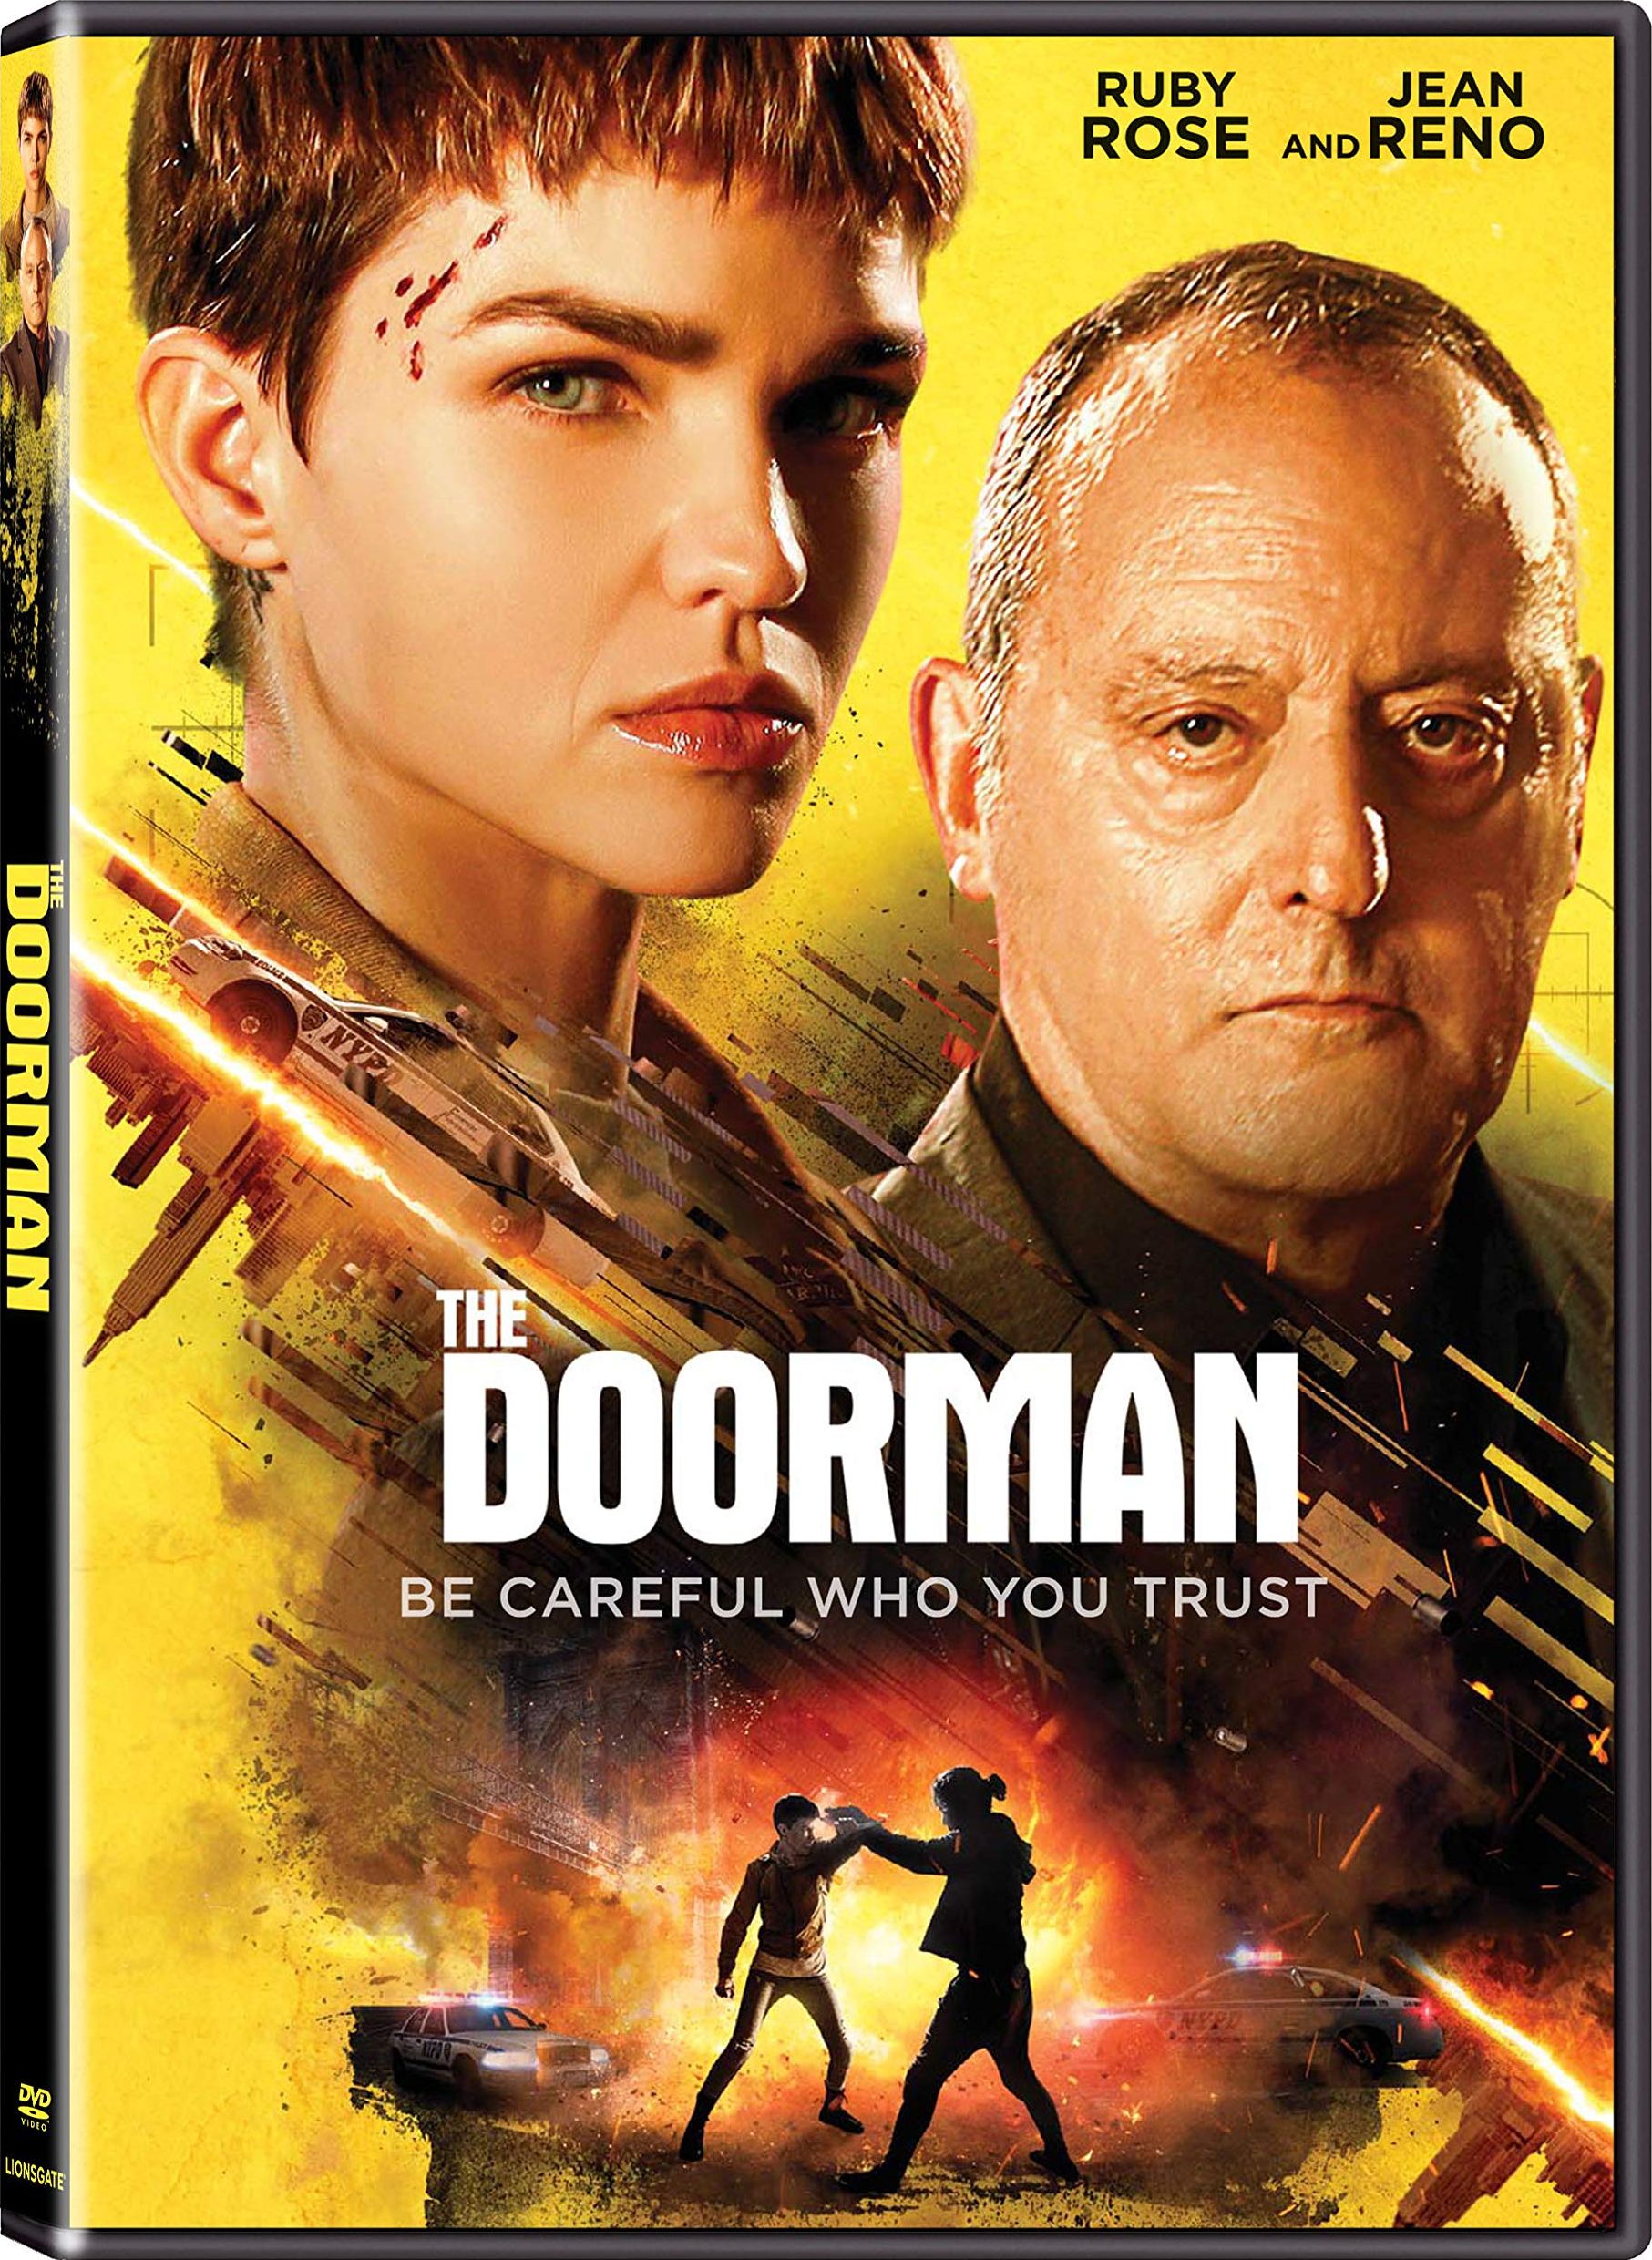 The Doorman DVD Release Date October 13, 2020